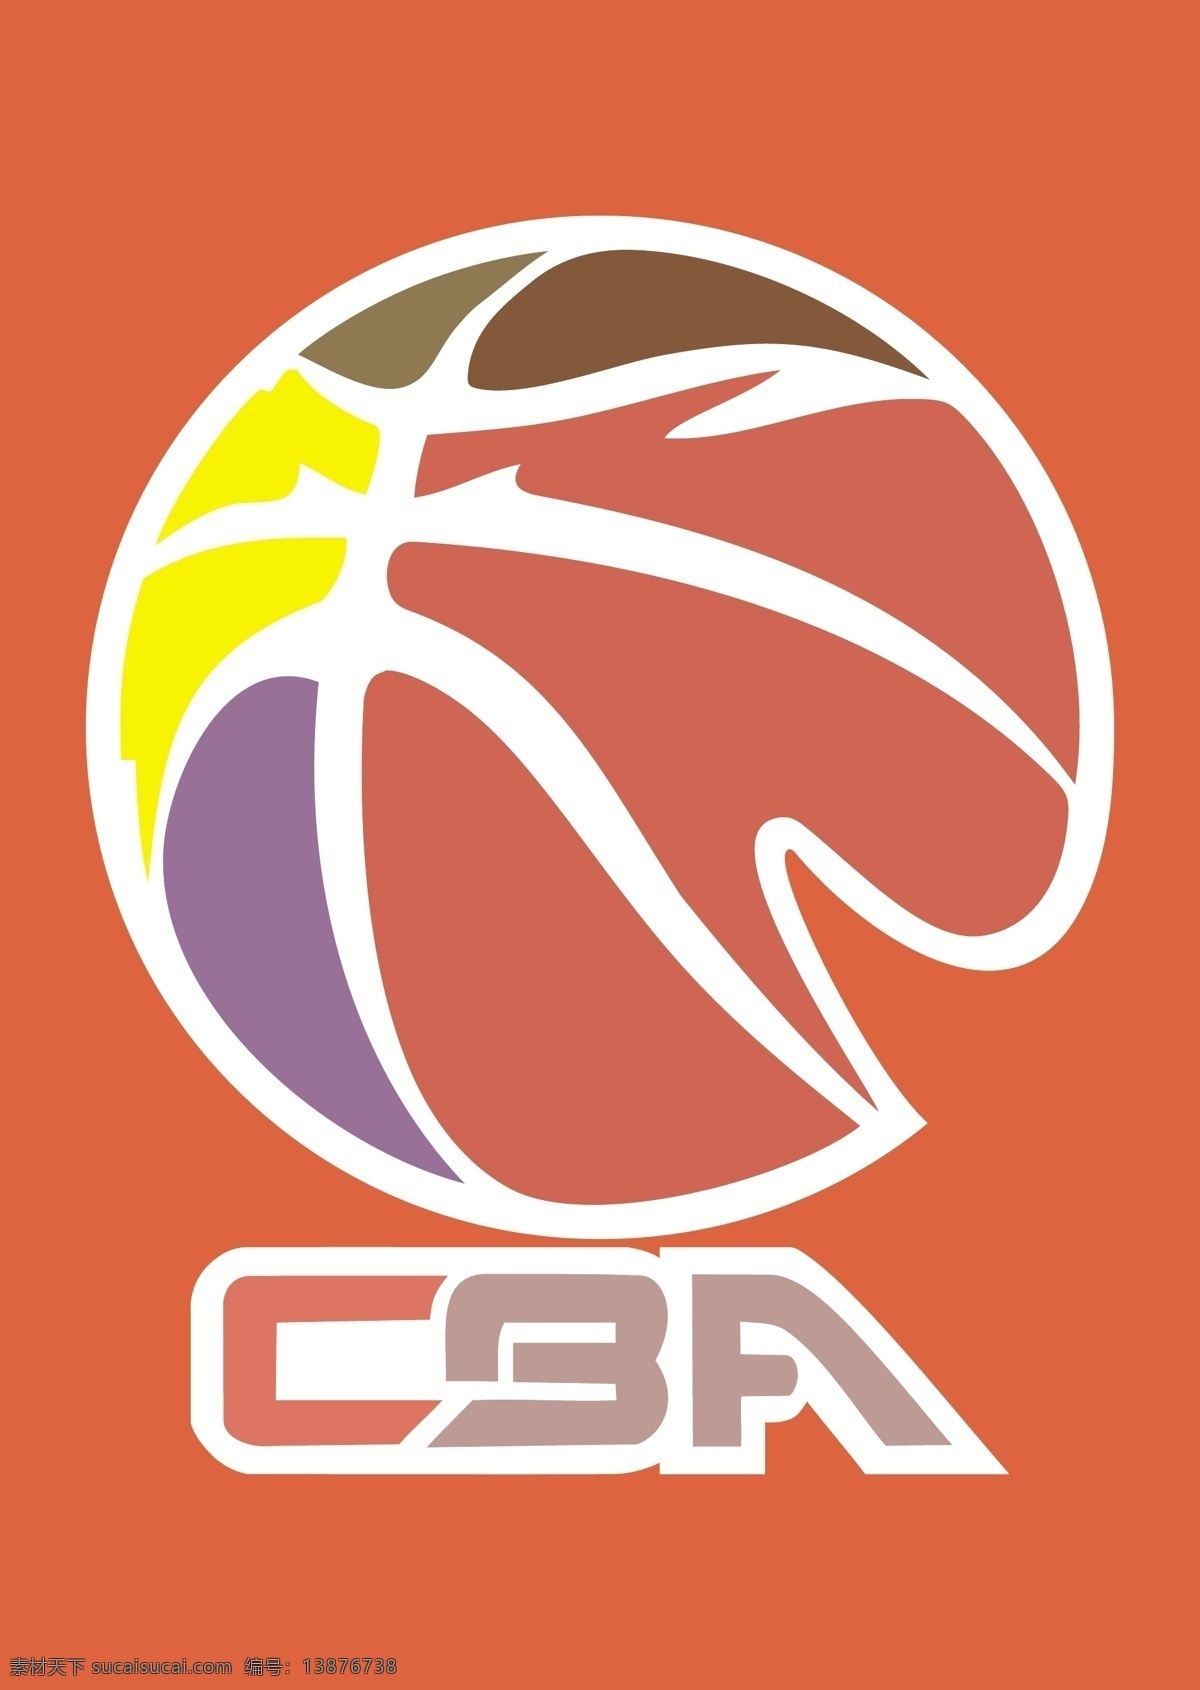 中国 男子 篮球 联赛 cba 标志 男篮联赛标志 cba标志 男篮 logo cbalogo 篮球联赛标志 矢量图 ai格式 标志图标 企业